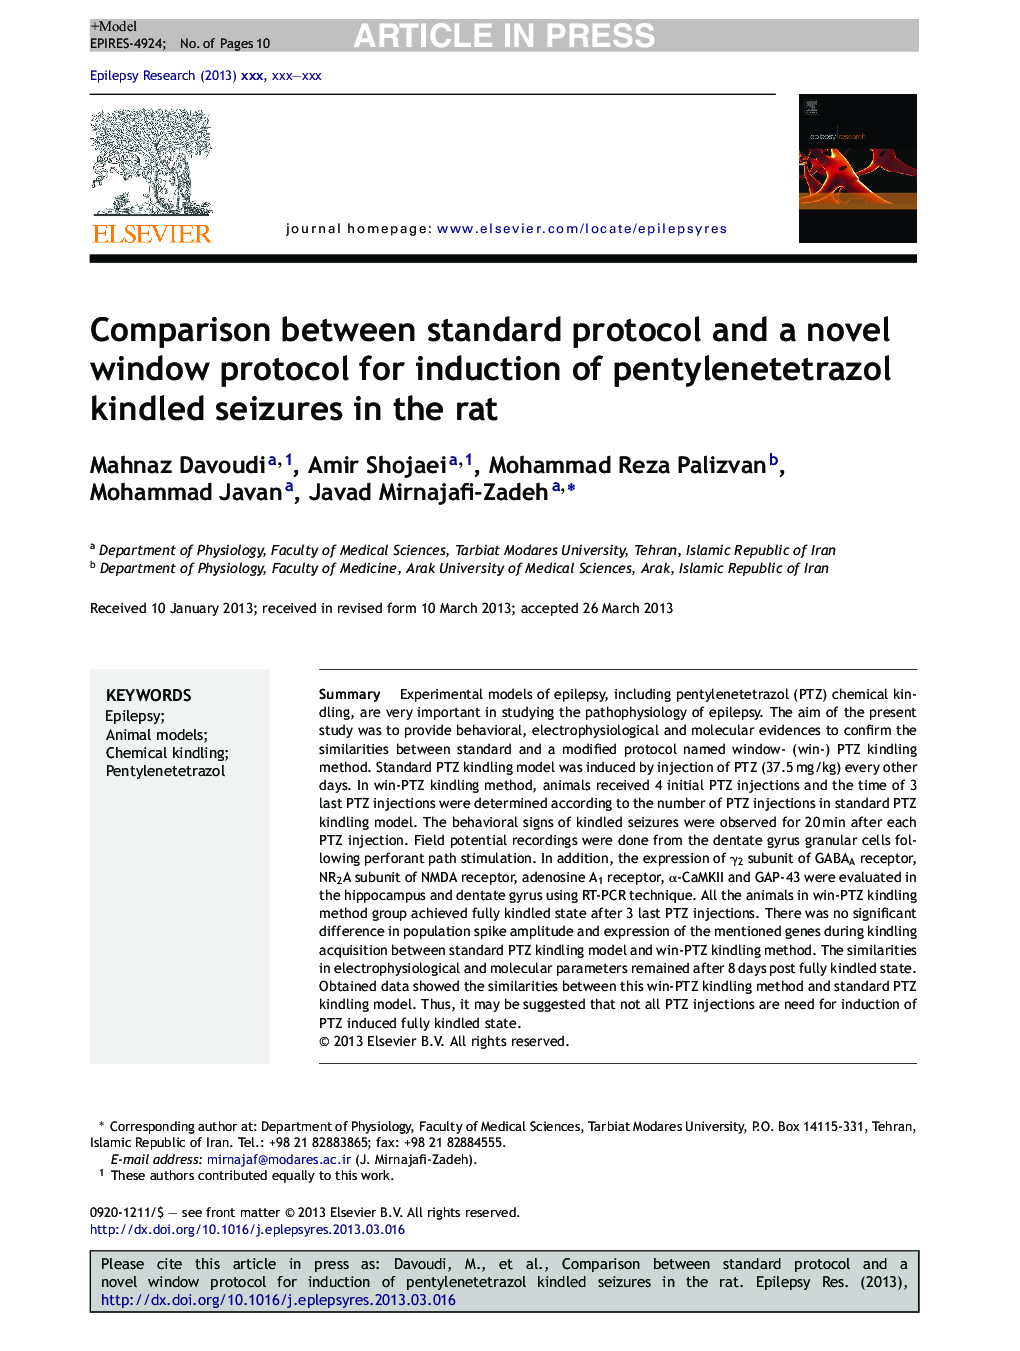 مقایسه پروتکل استاندارد و پروتکل جدید پنجره ای برای القاء تشنج های پاتیلن تترازول در موش صحرایی 